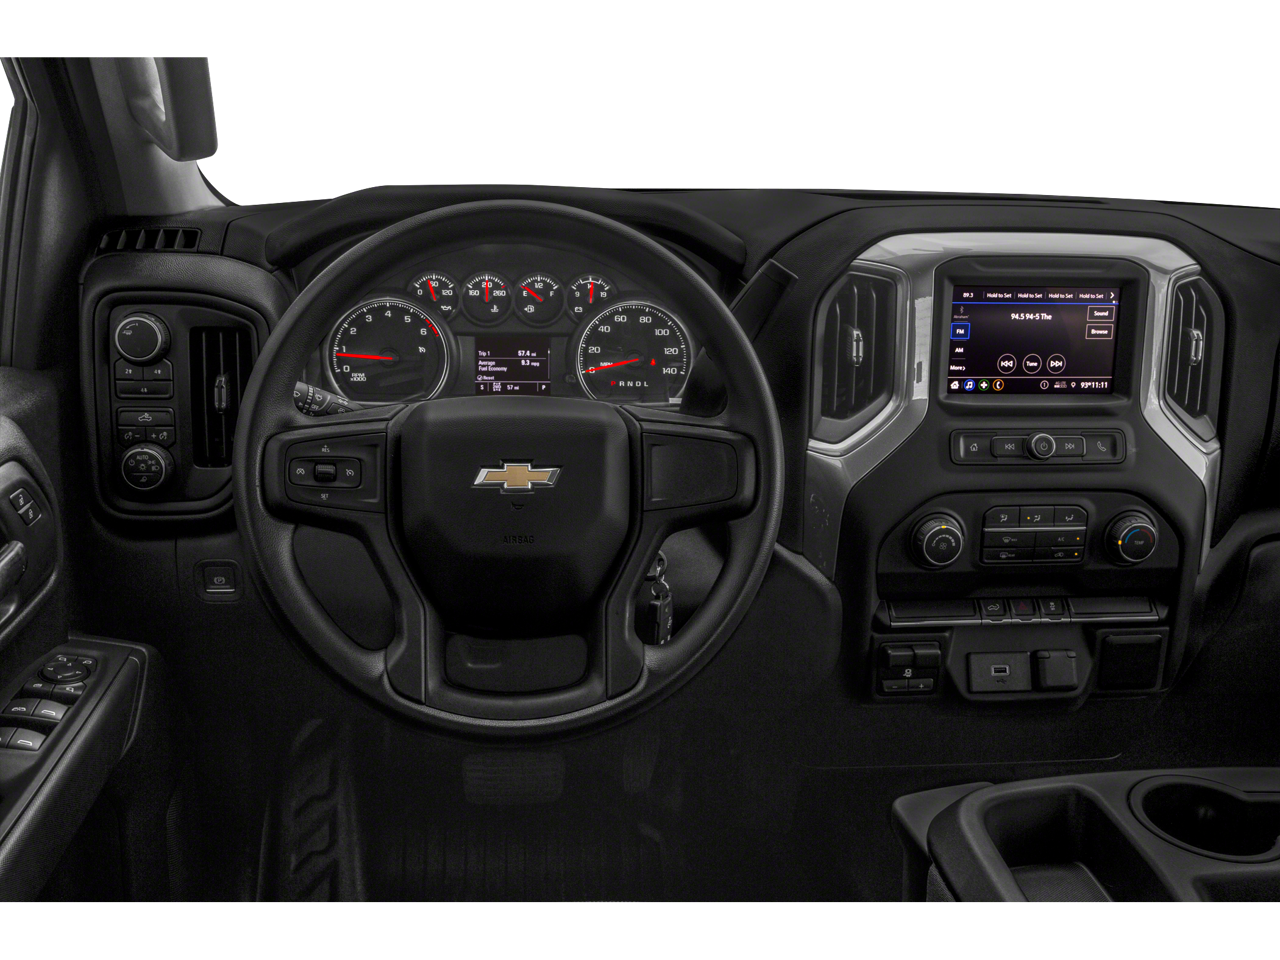 2021 Chevrolet Silverado 2500HD Work Truck W/PLOW